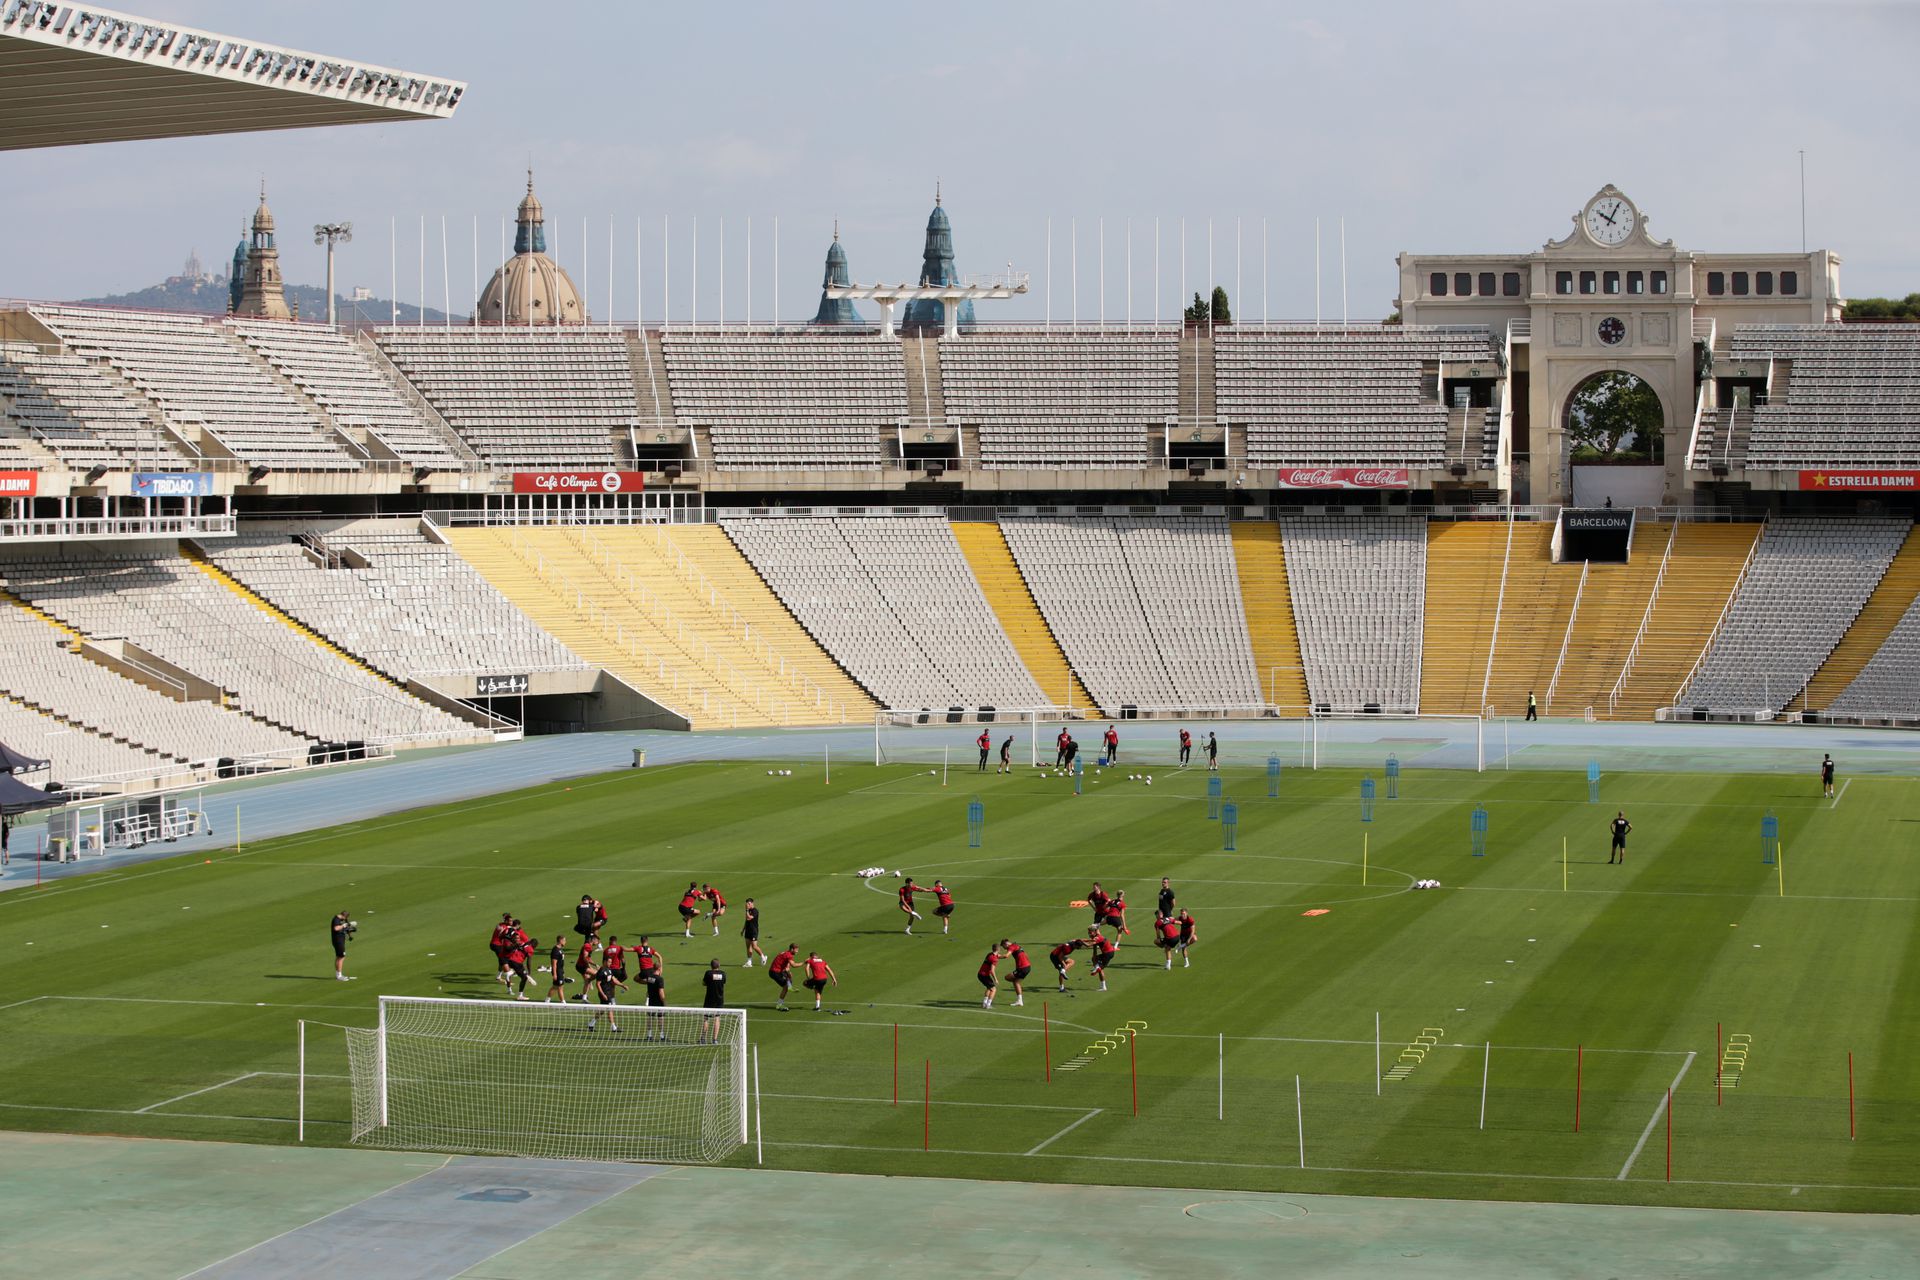 Az 1992-es, barcelonai olimpia egyik helyszíne, az Estadi Lluis Companys lesz a következő idényben az FC Barcelona otthona. Fotó: Getty Images